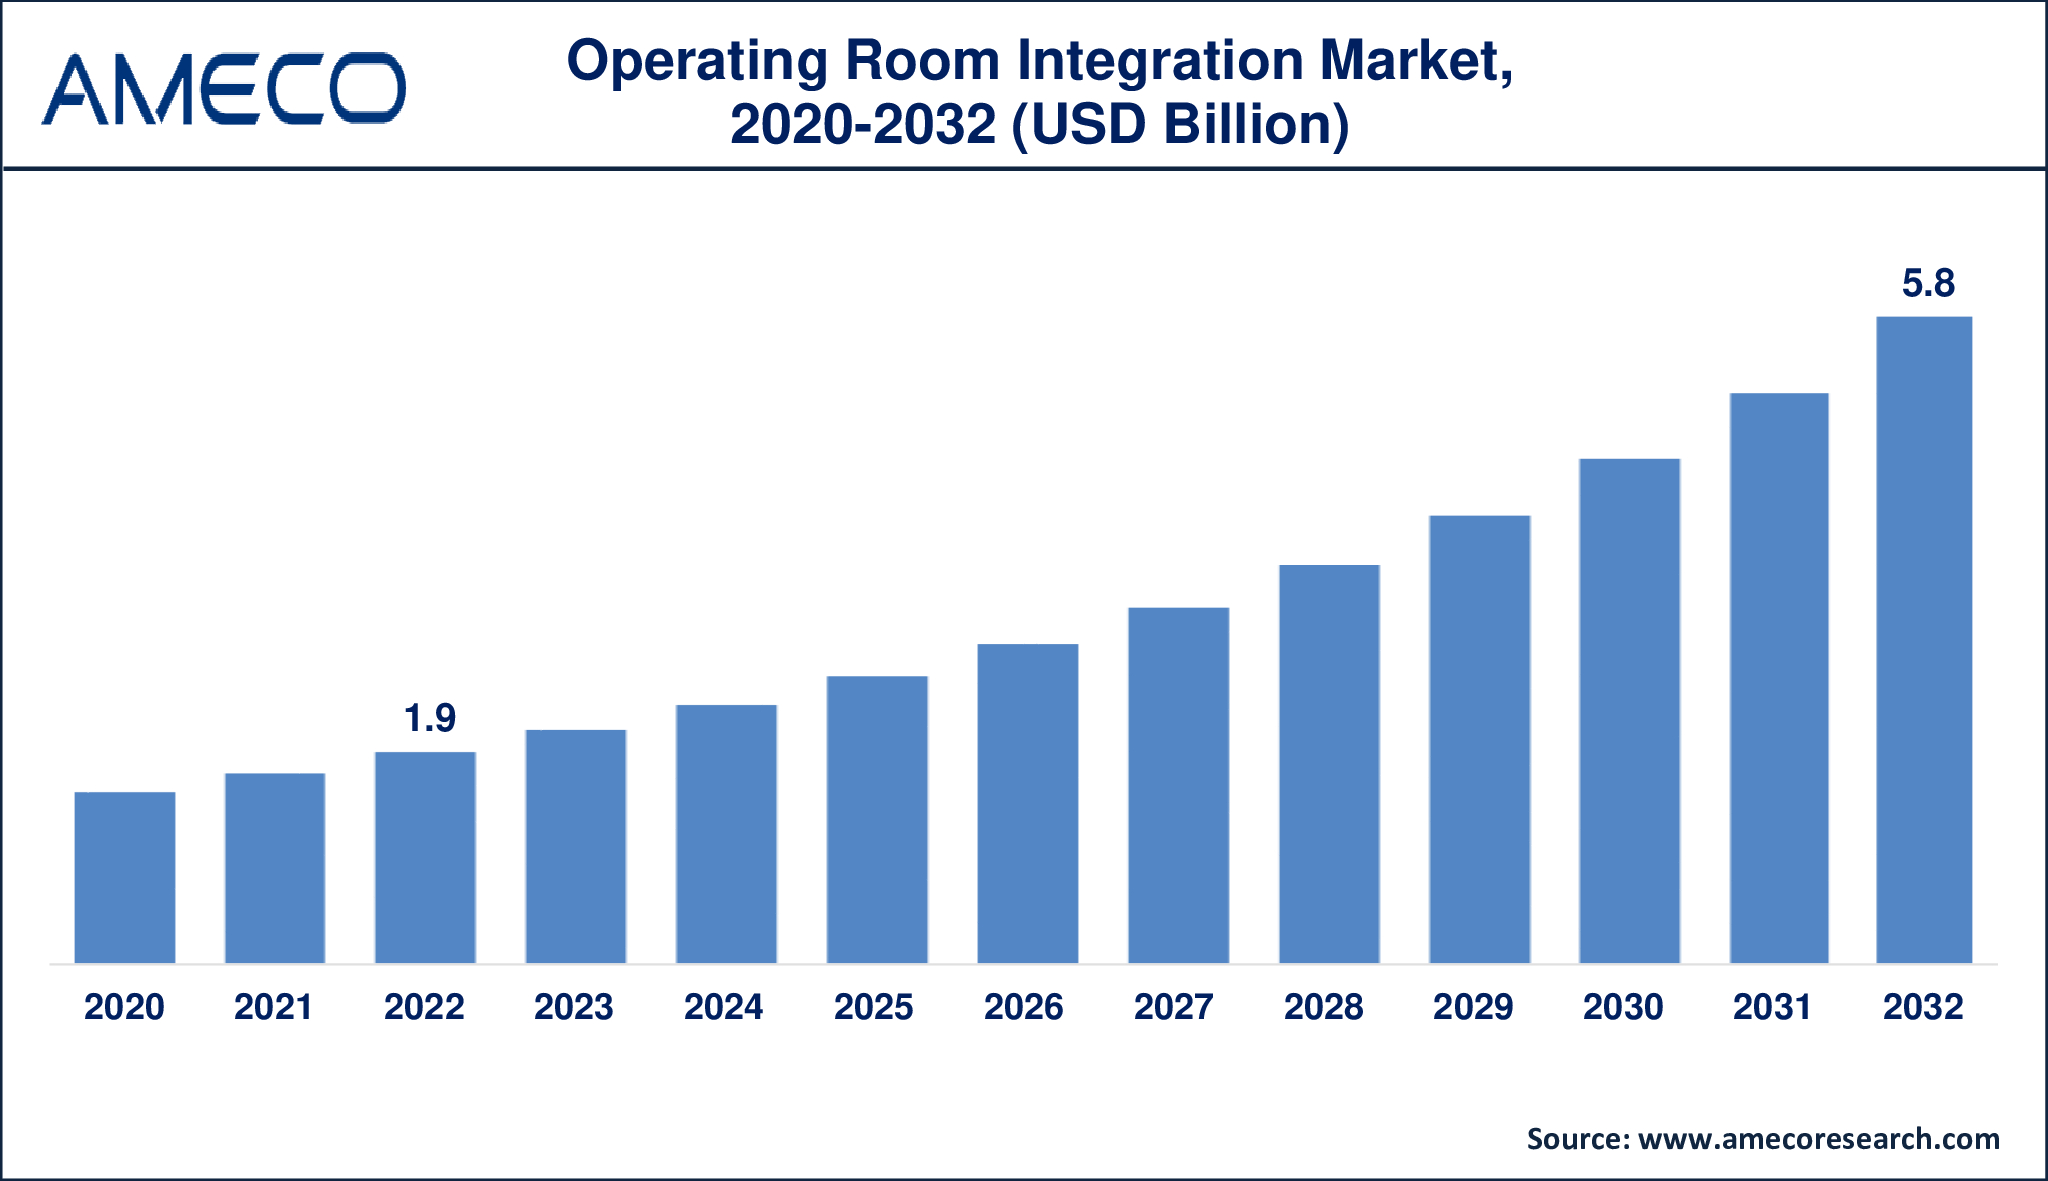 Operating Room Integration Market Dynamics